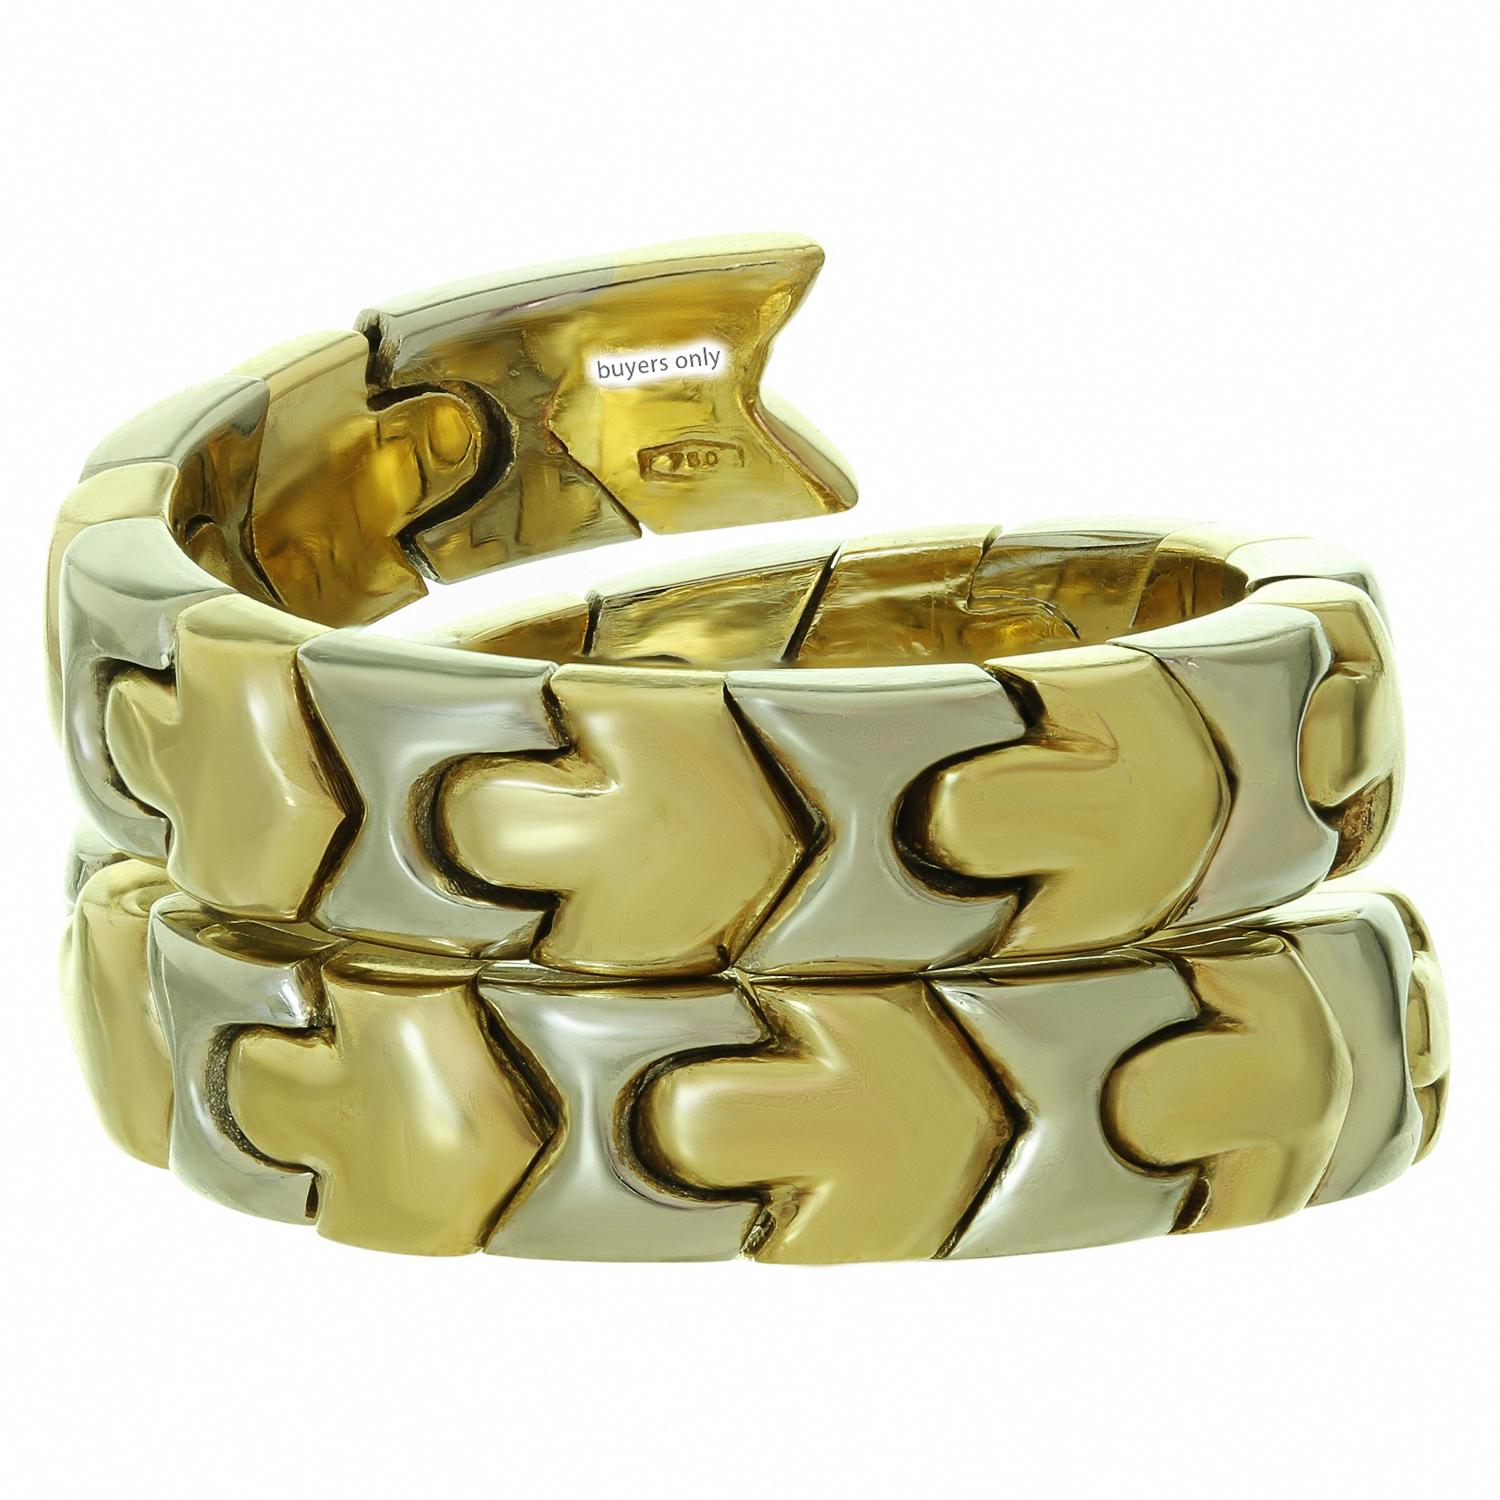 Dieser wunderschöne Ring von Bvlgari aus der Collection'S Alveare zeichnet sich durch ein gewundenes Design aus geometrischen Gliedern aus 18 Karat Weiß- und Gelbgold aus. Dieser Ring hat eine leicht verstellbare Größe. Hergestellt in Italien in den